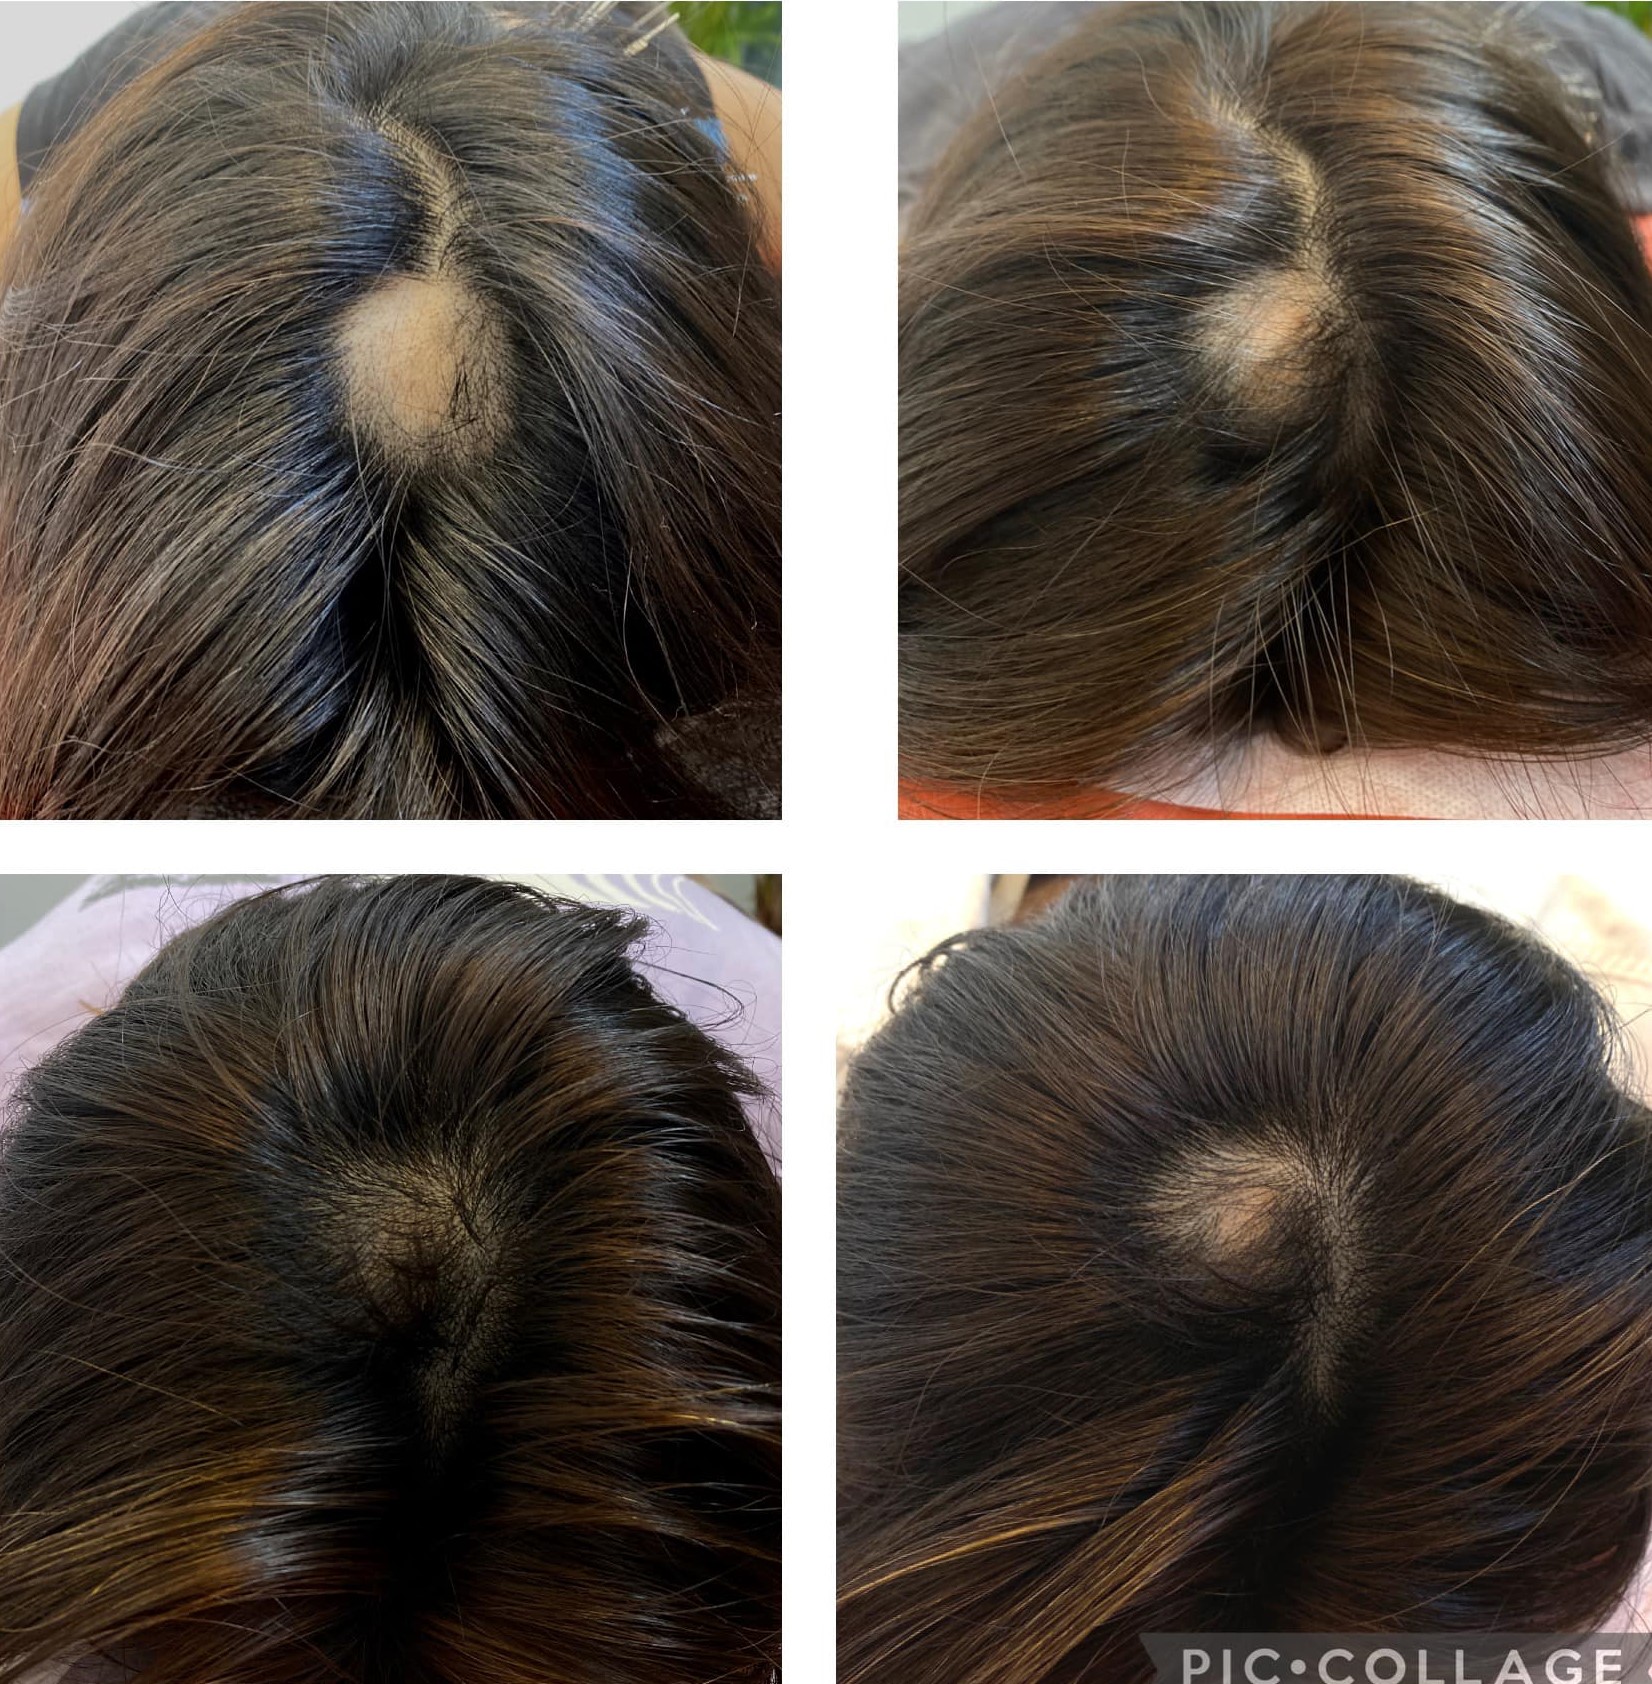 maryu358鍼灸・整体・ルート治療院 薄毛ルート治療のメニュー画像